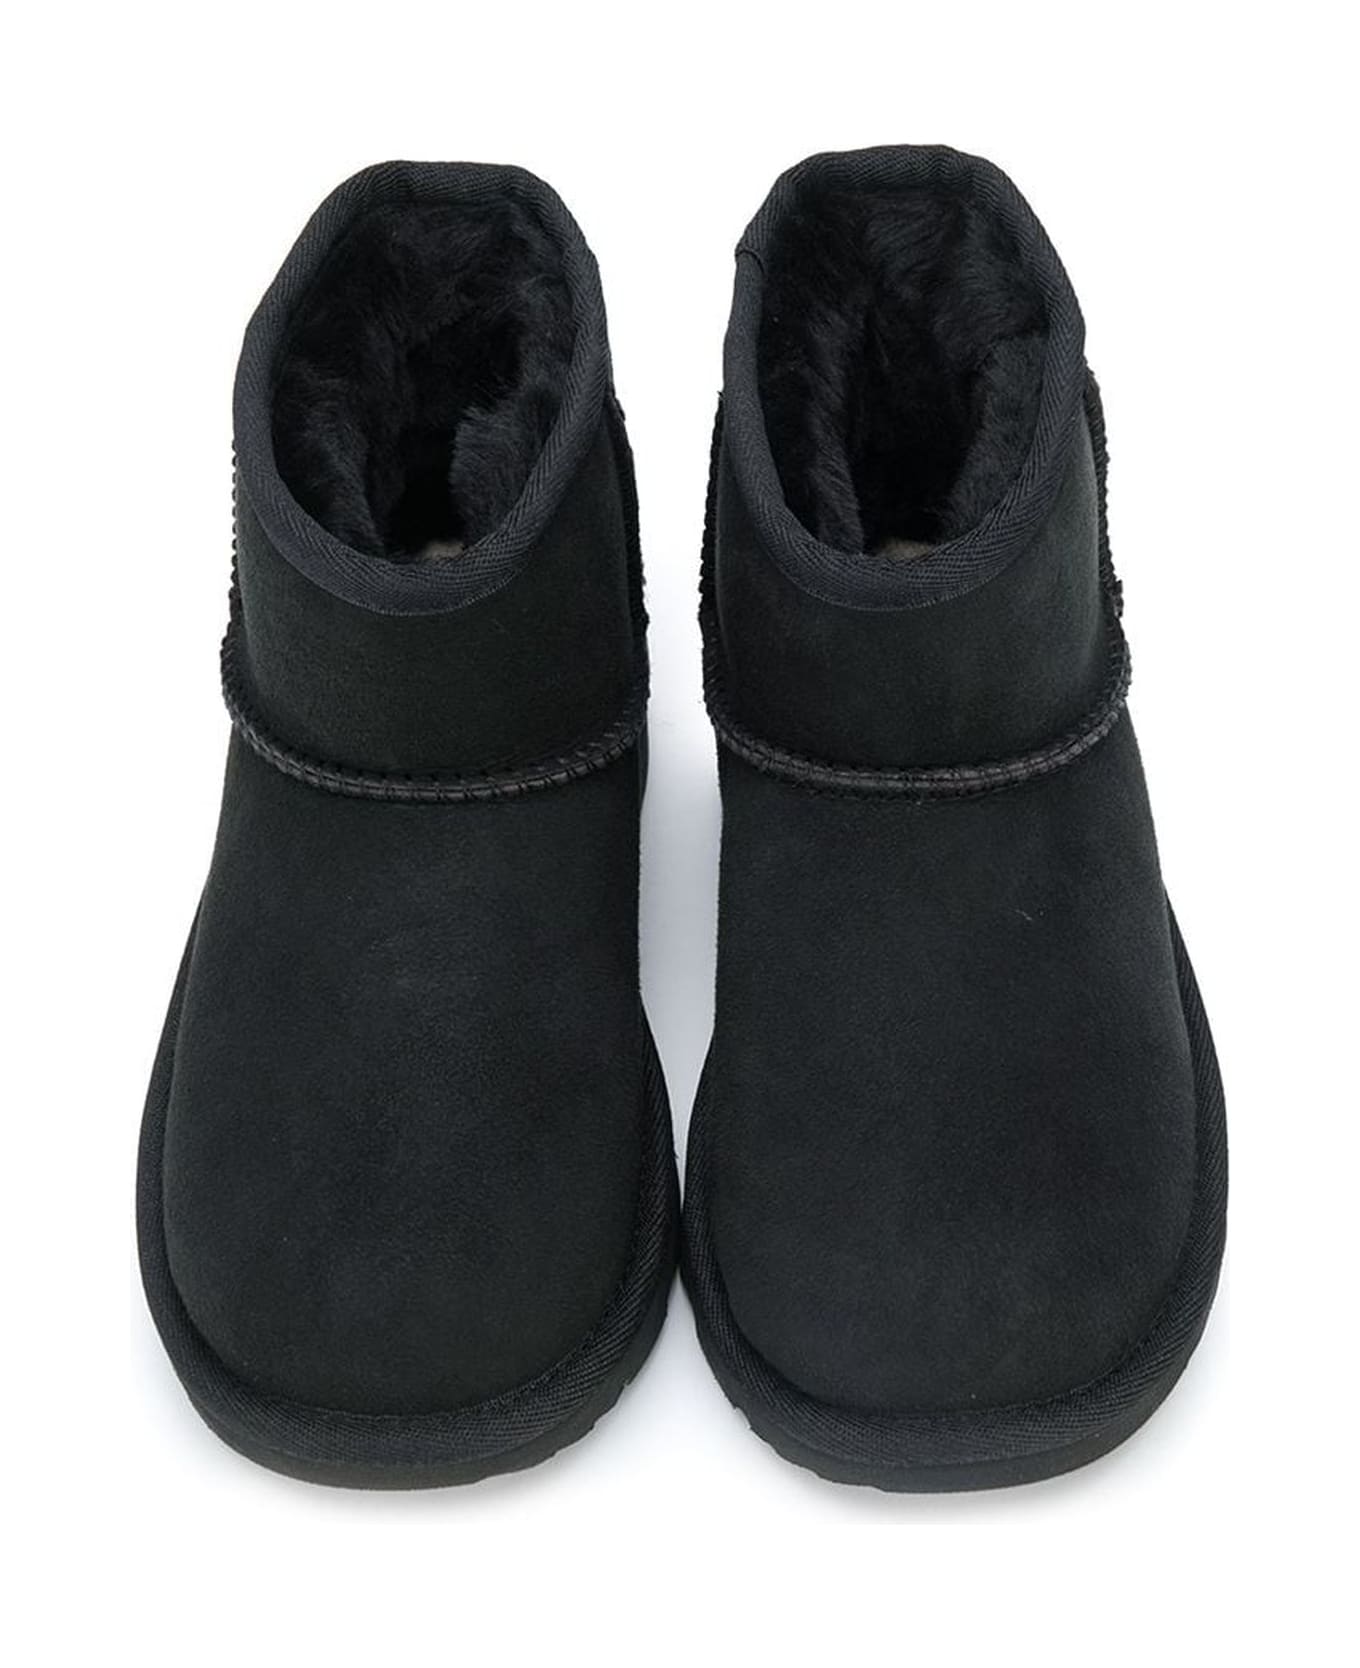 UGG Kids Boots Black - Black